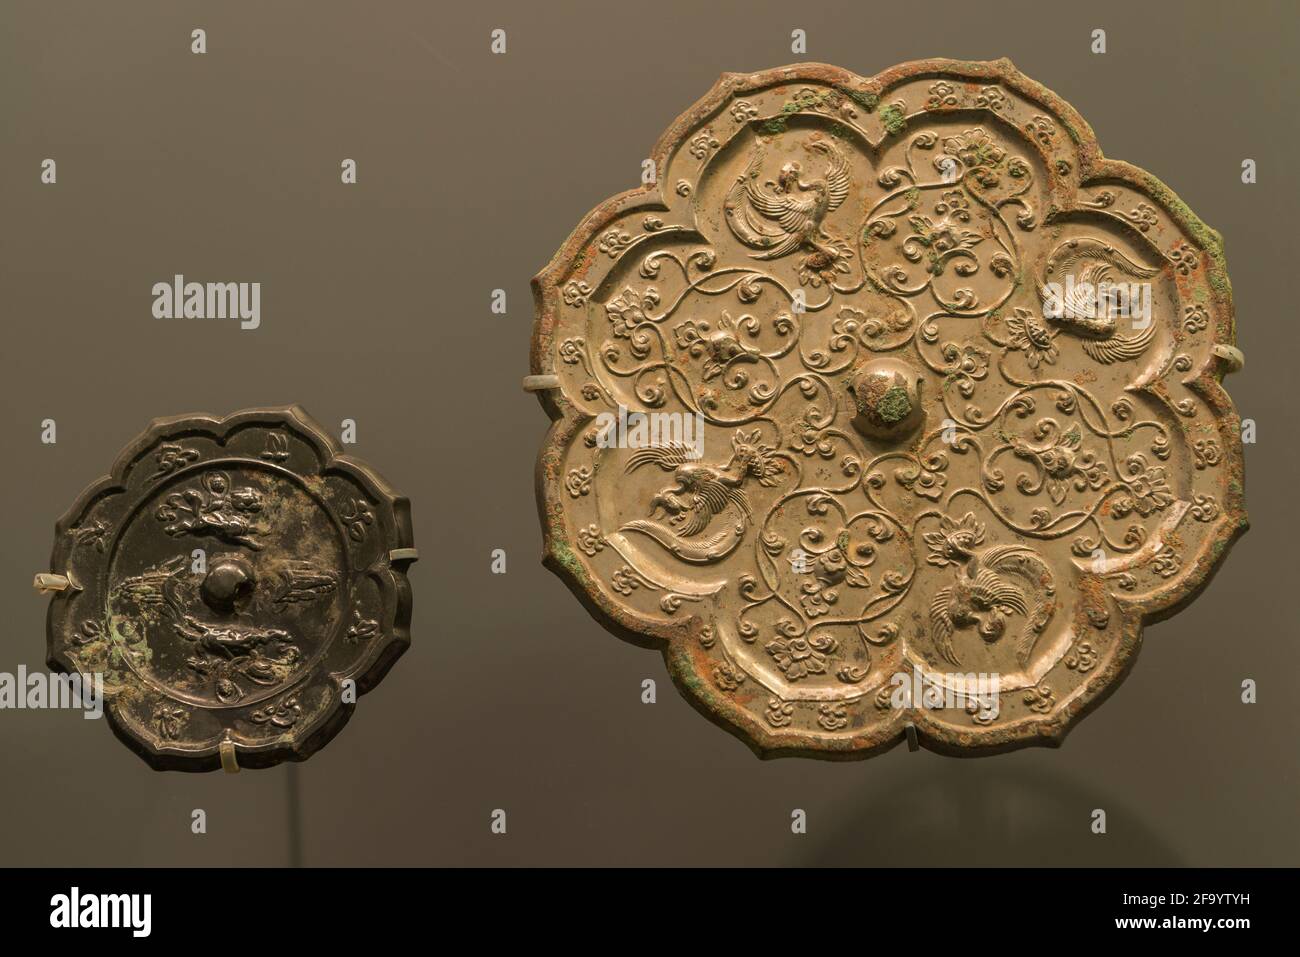 Espejos de bronce de la dinastía Tang (618-907), desenterrados en Yangfang, distrito de Changping, Beijing, China. Foto de stock